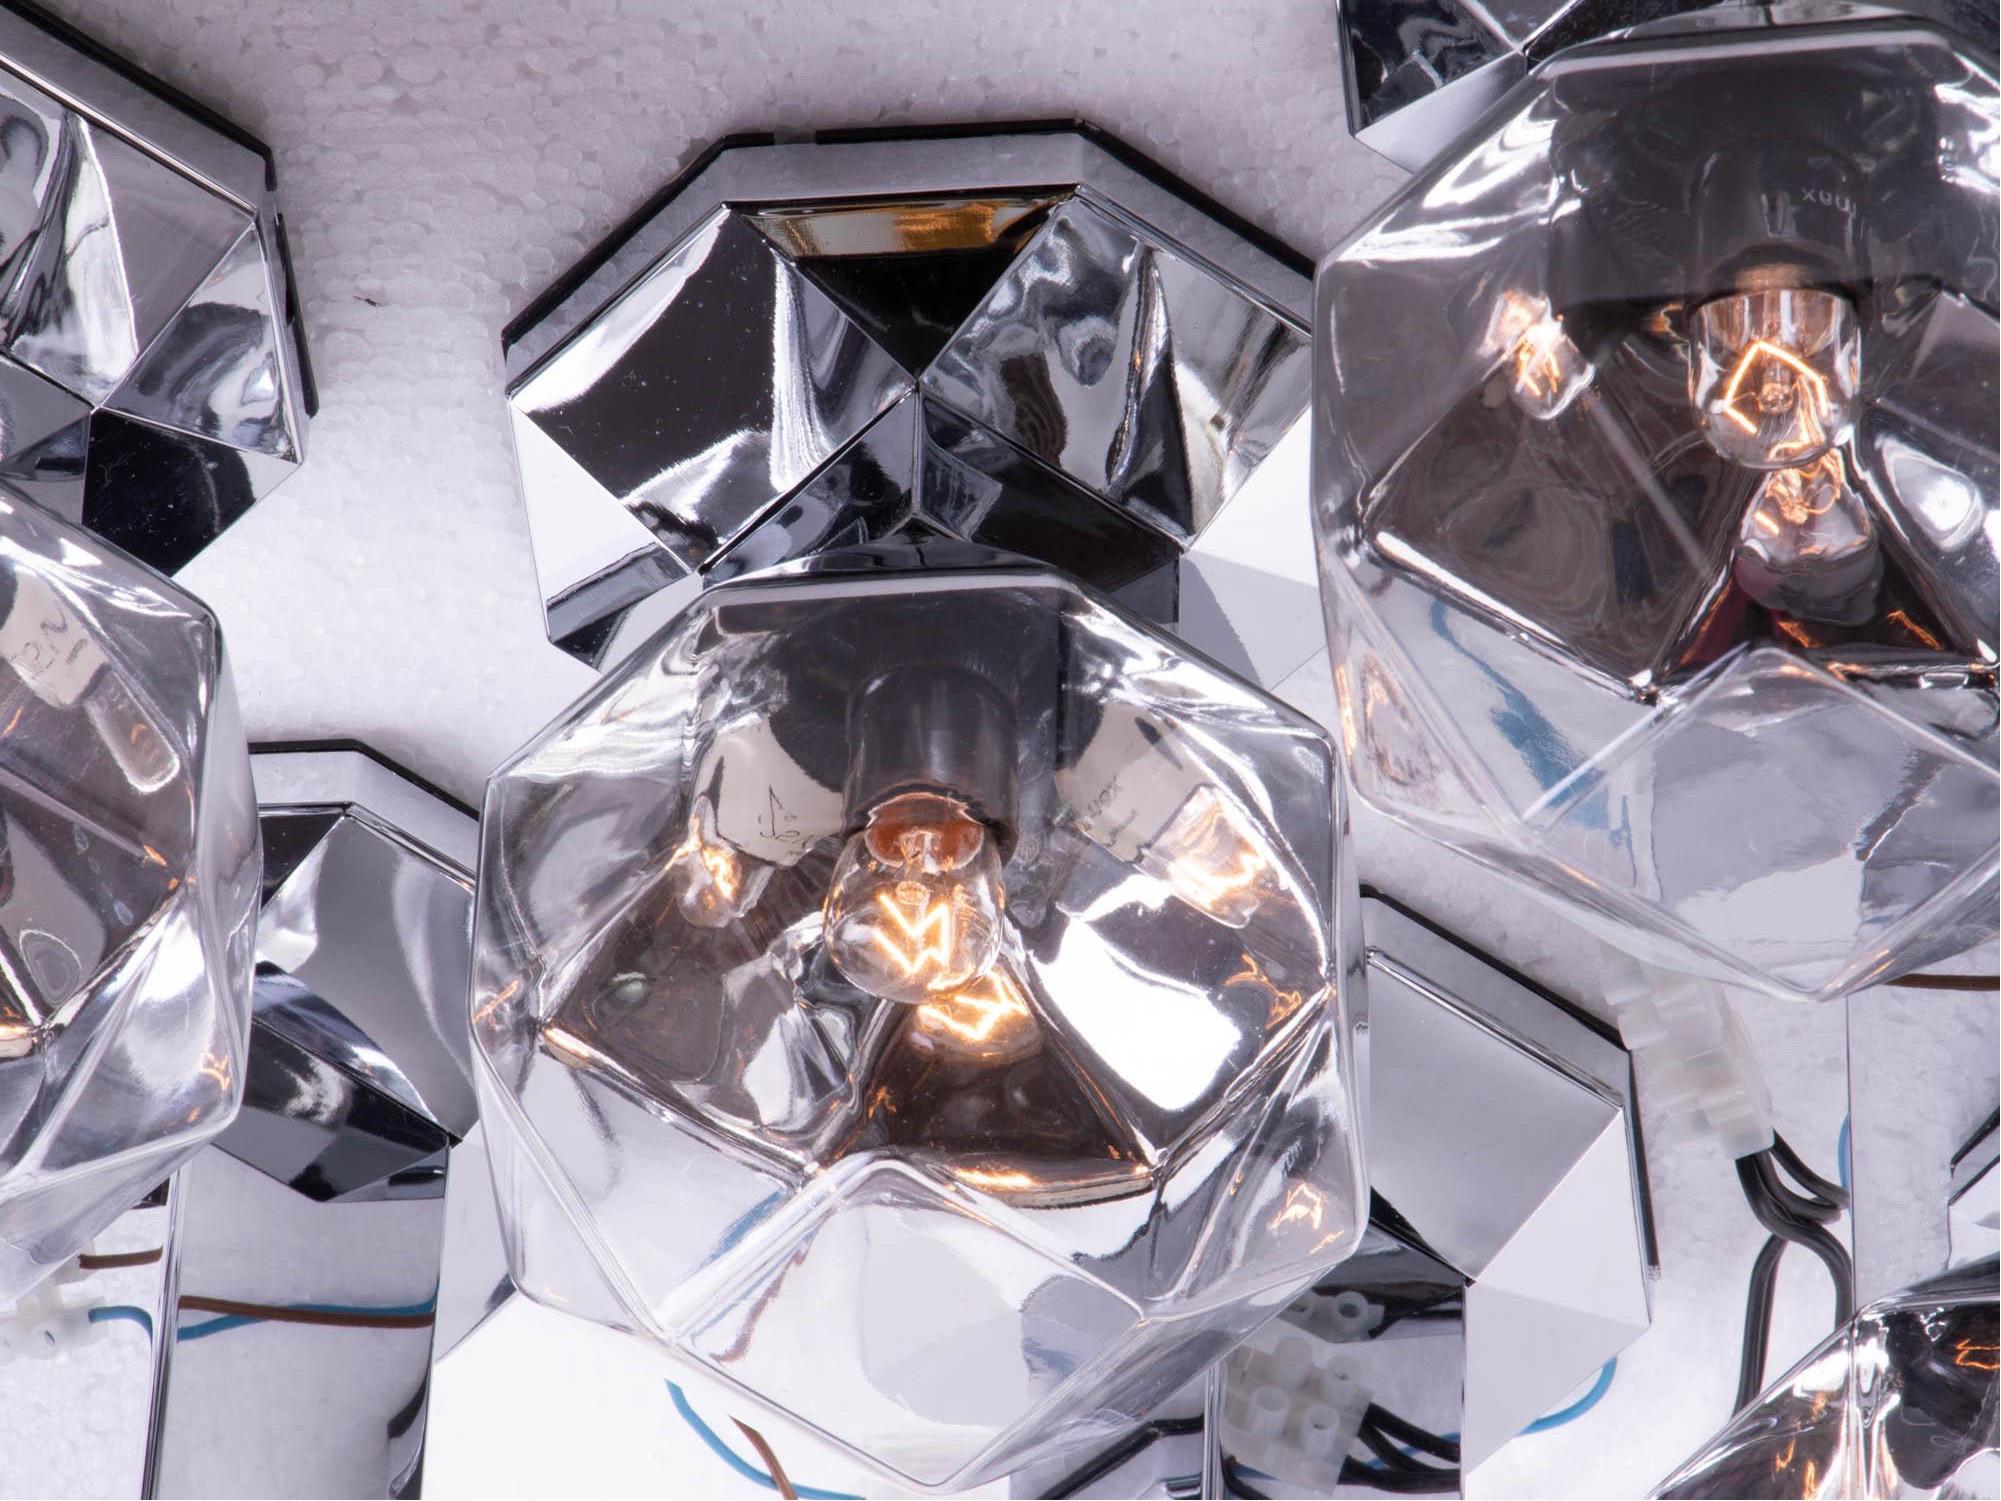 Elegantes Sputnik-Set aus neun teilweise verchromten mundgeblasenen kubistischen Glasschirmen auf verspiegelten Kunststoff- und Stahlrahmen. Die Lampen können individuell an Wand und Decke angebracht werden. Entworfen von Motoko Ishii für Staff